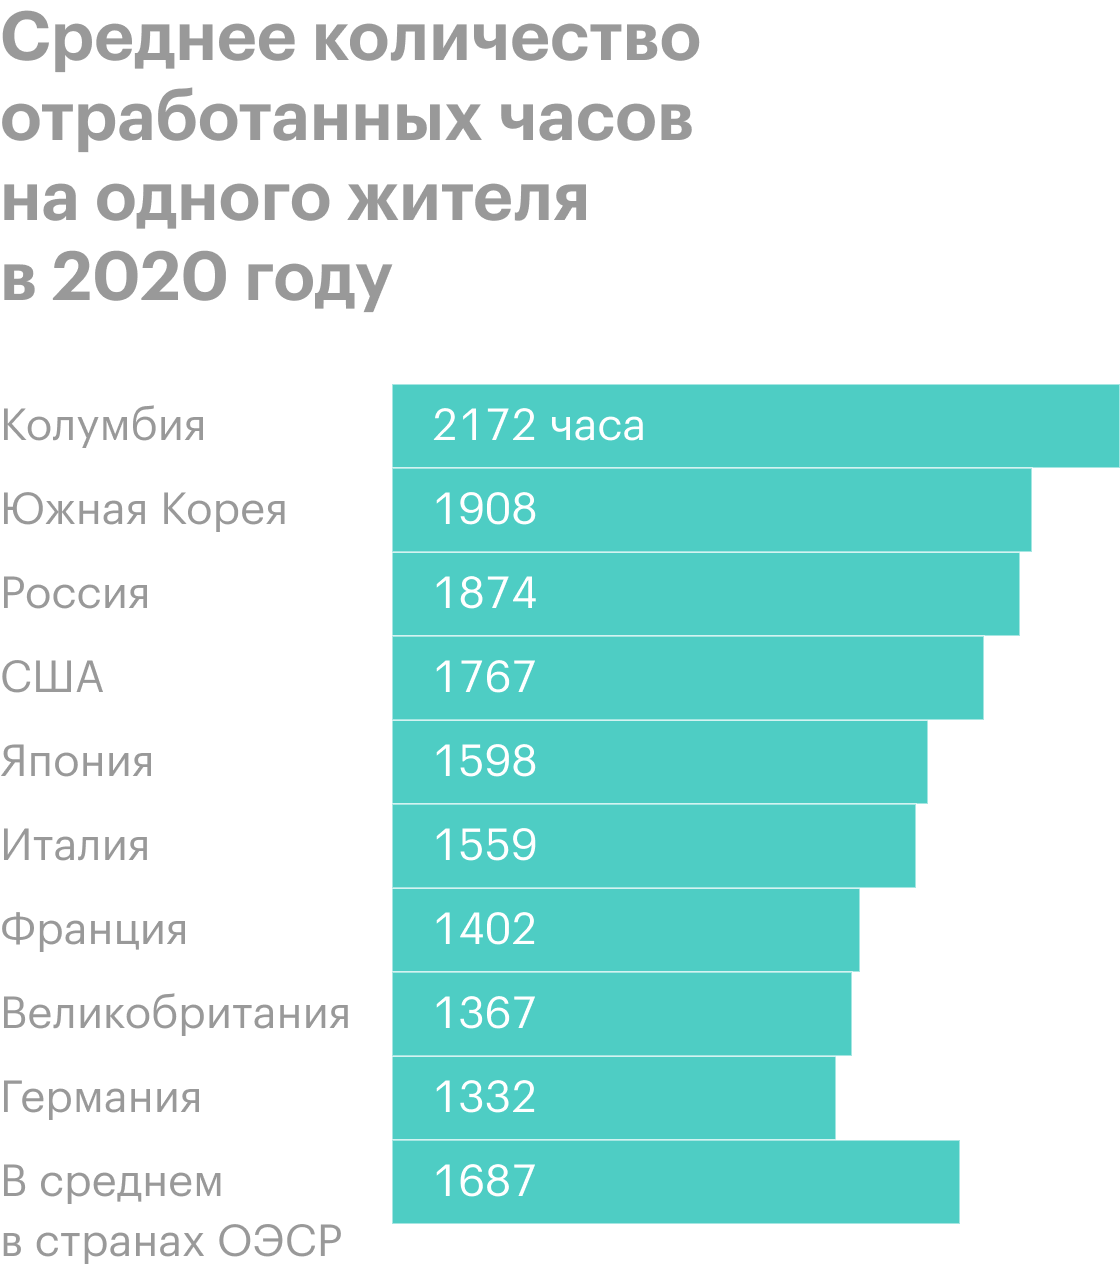 Россия в последние годы стабильно входит в пятерку стран по количеству рабочих часов на одного трудоспособного взрослого жителя. В 2018&nbsp;этот показатель составил 1972&nbsp;часа, а в 2017 — 1980&nbsp;часов. Источник: data.oecd.org